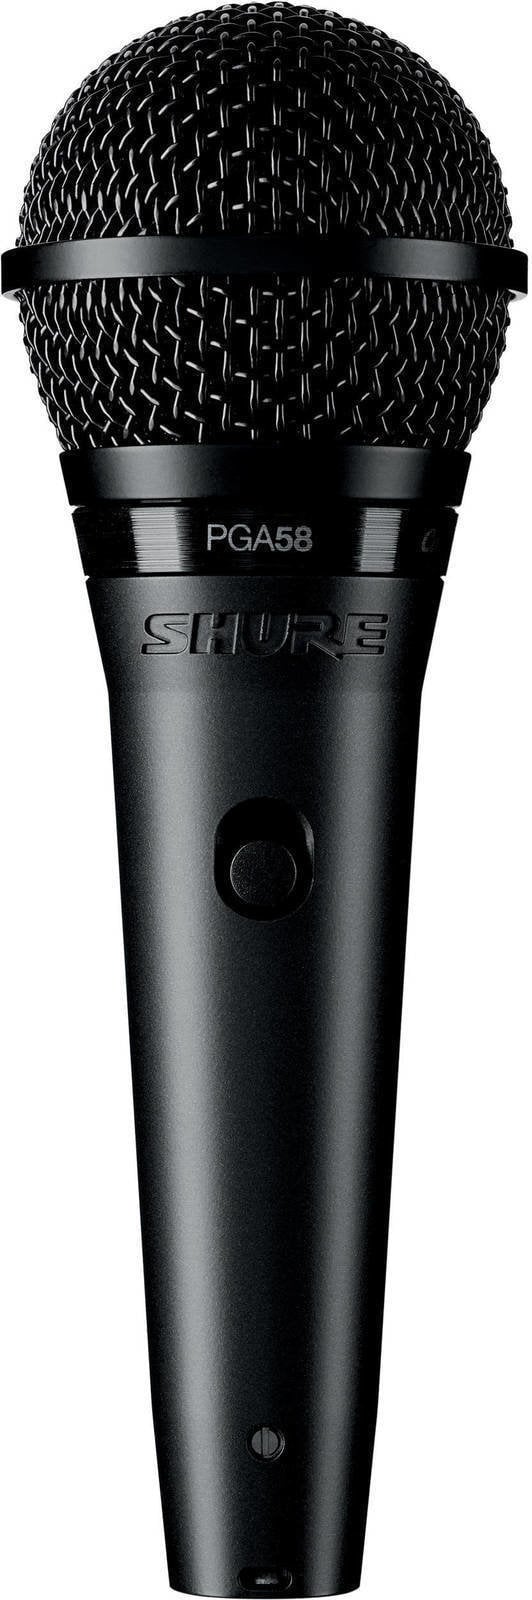 Vokální dynamický mikrofon Shure PGA58-QTR Vokální dynamický mikrofon